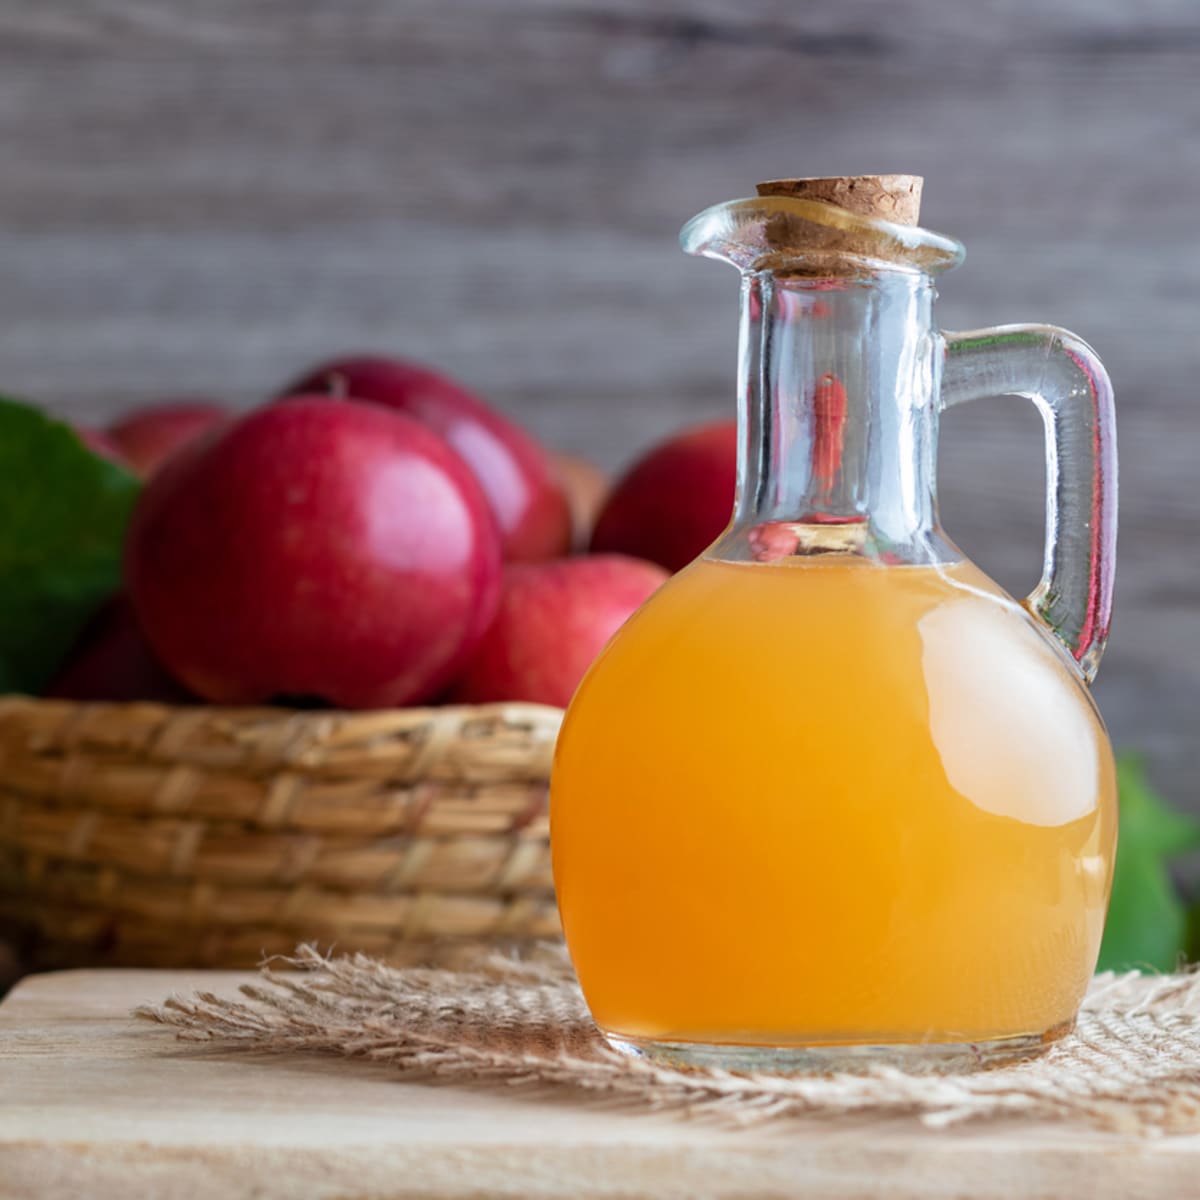 Nefiltrovaný jablečný ocet můžete vyrobit doma z odřezků a slupek